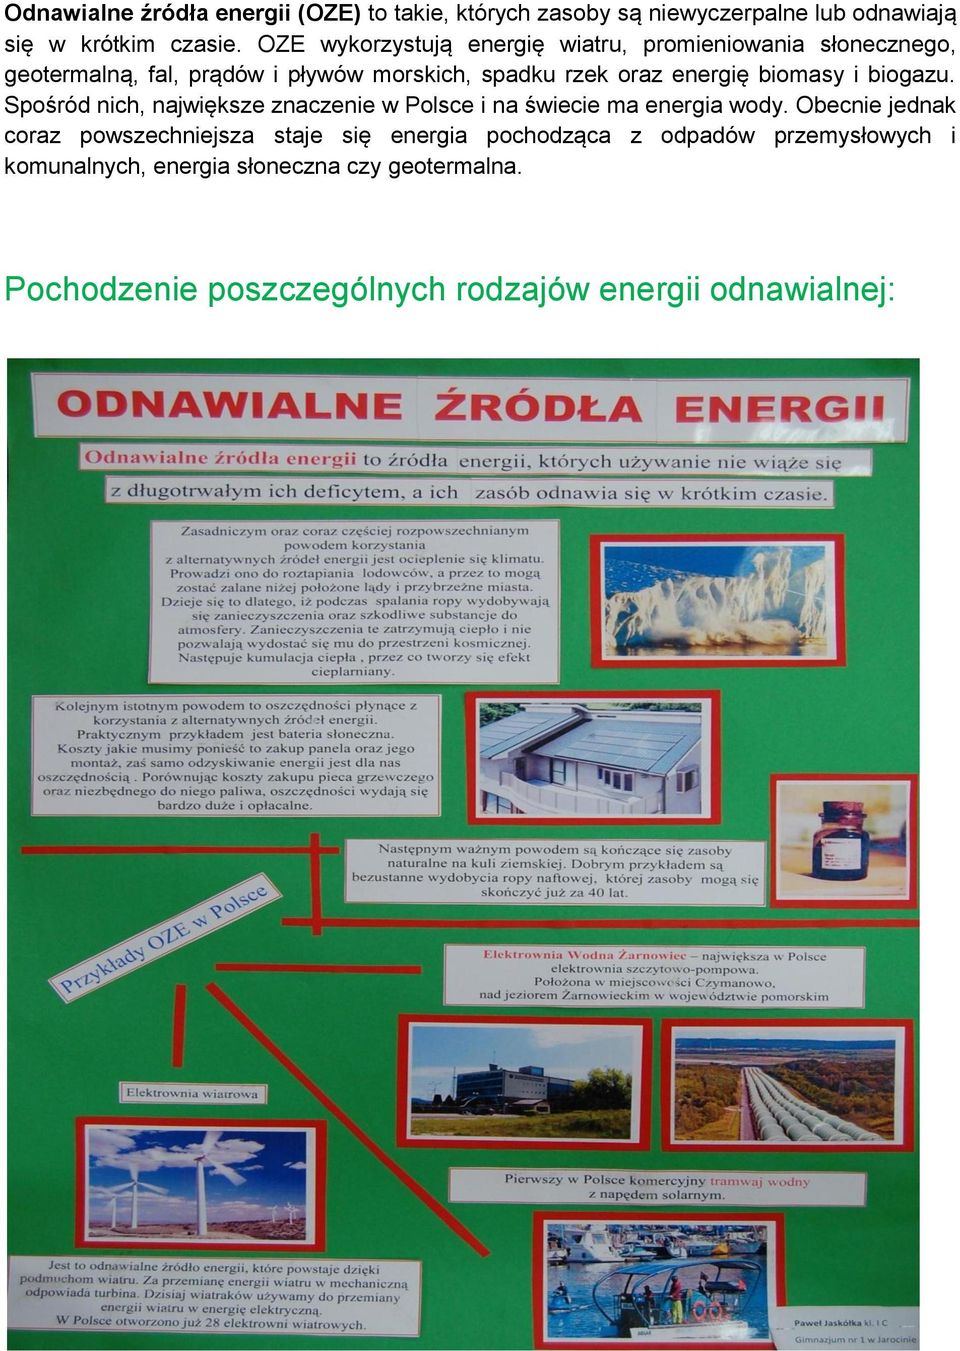 biomasy i biogazu. Spośród nich, największe znaczenie w Polsce i na świecie ma energia wody.